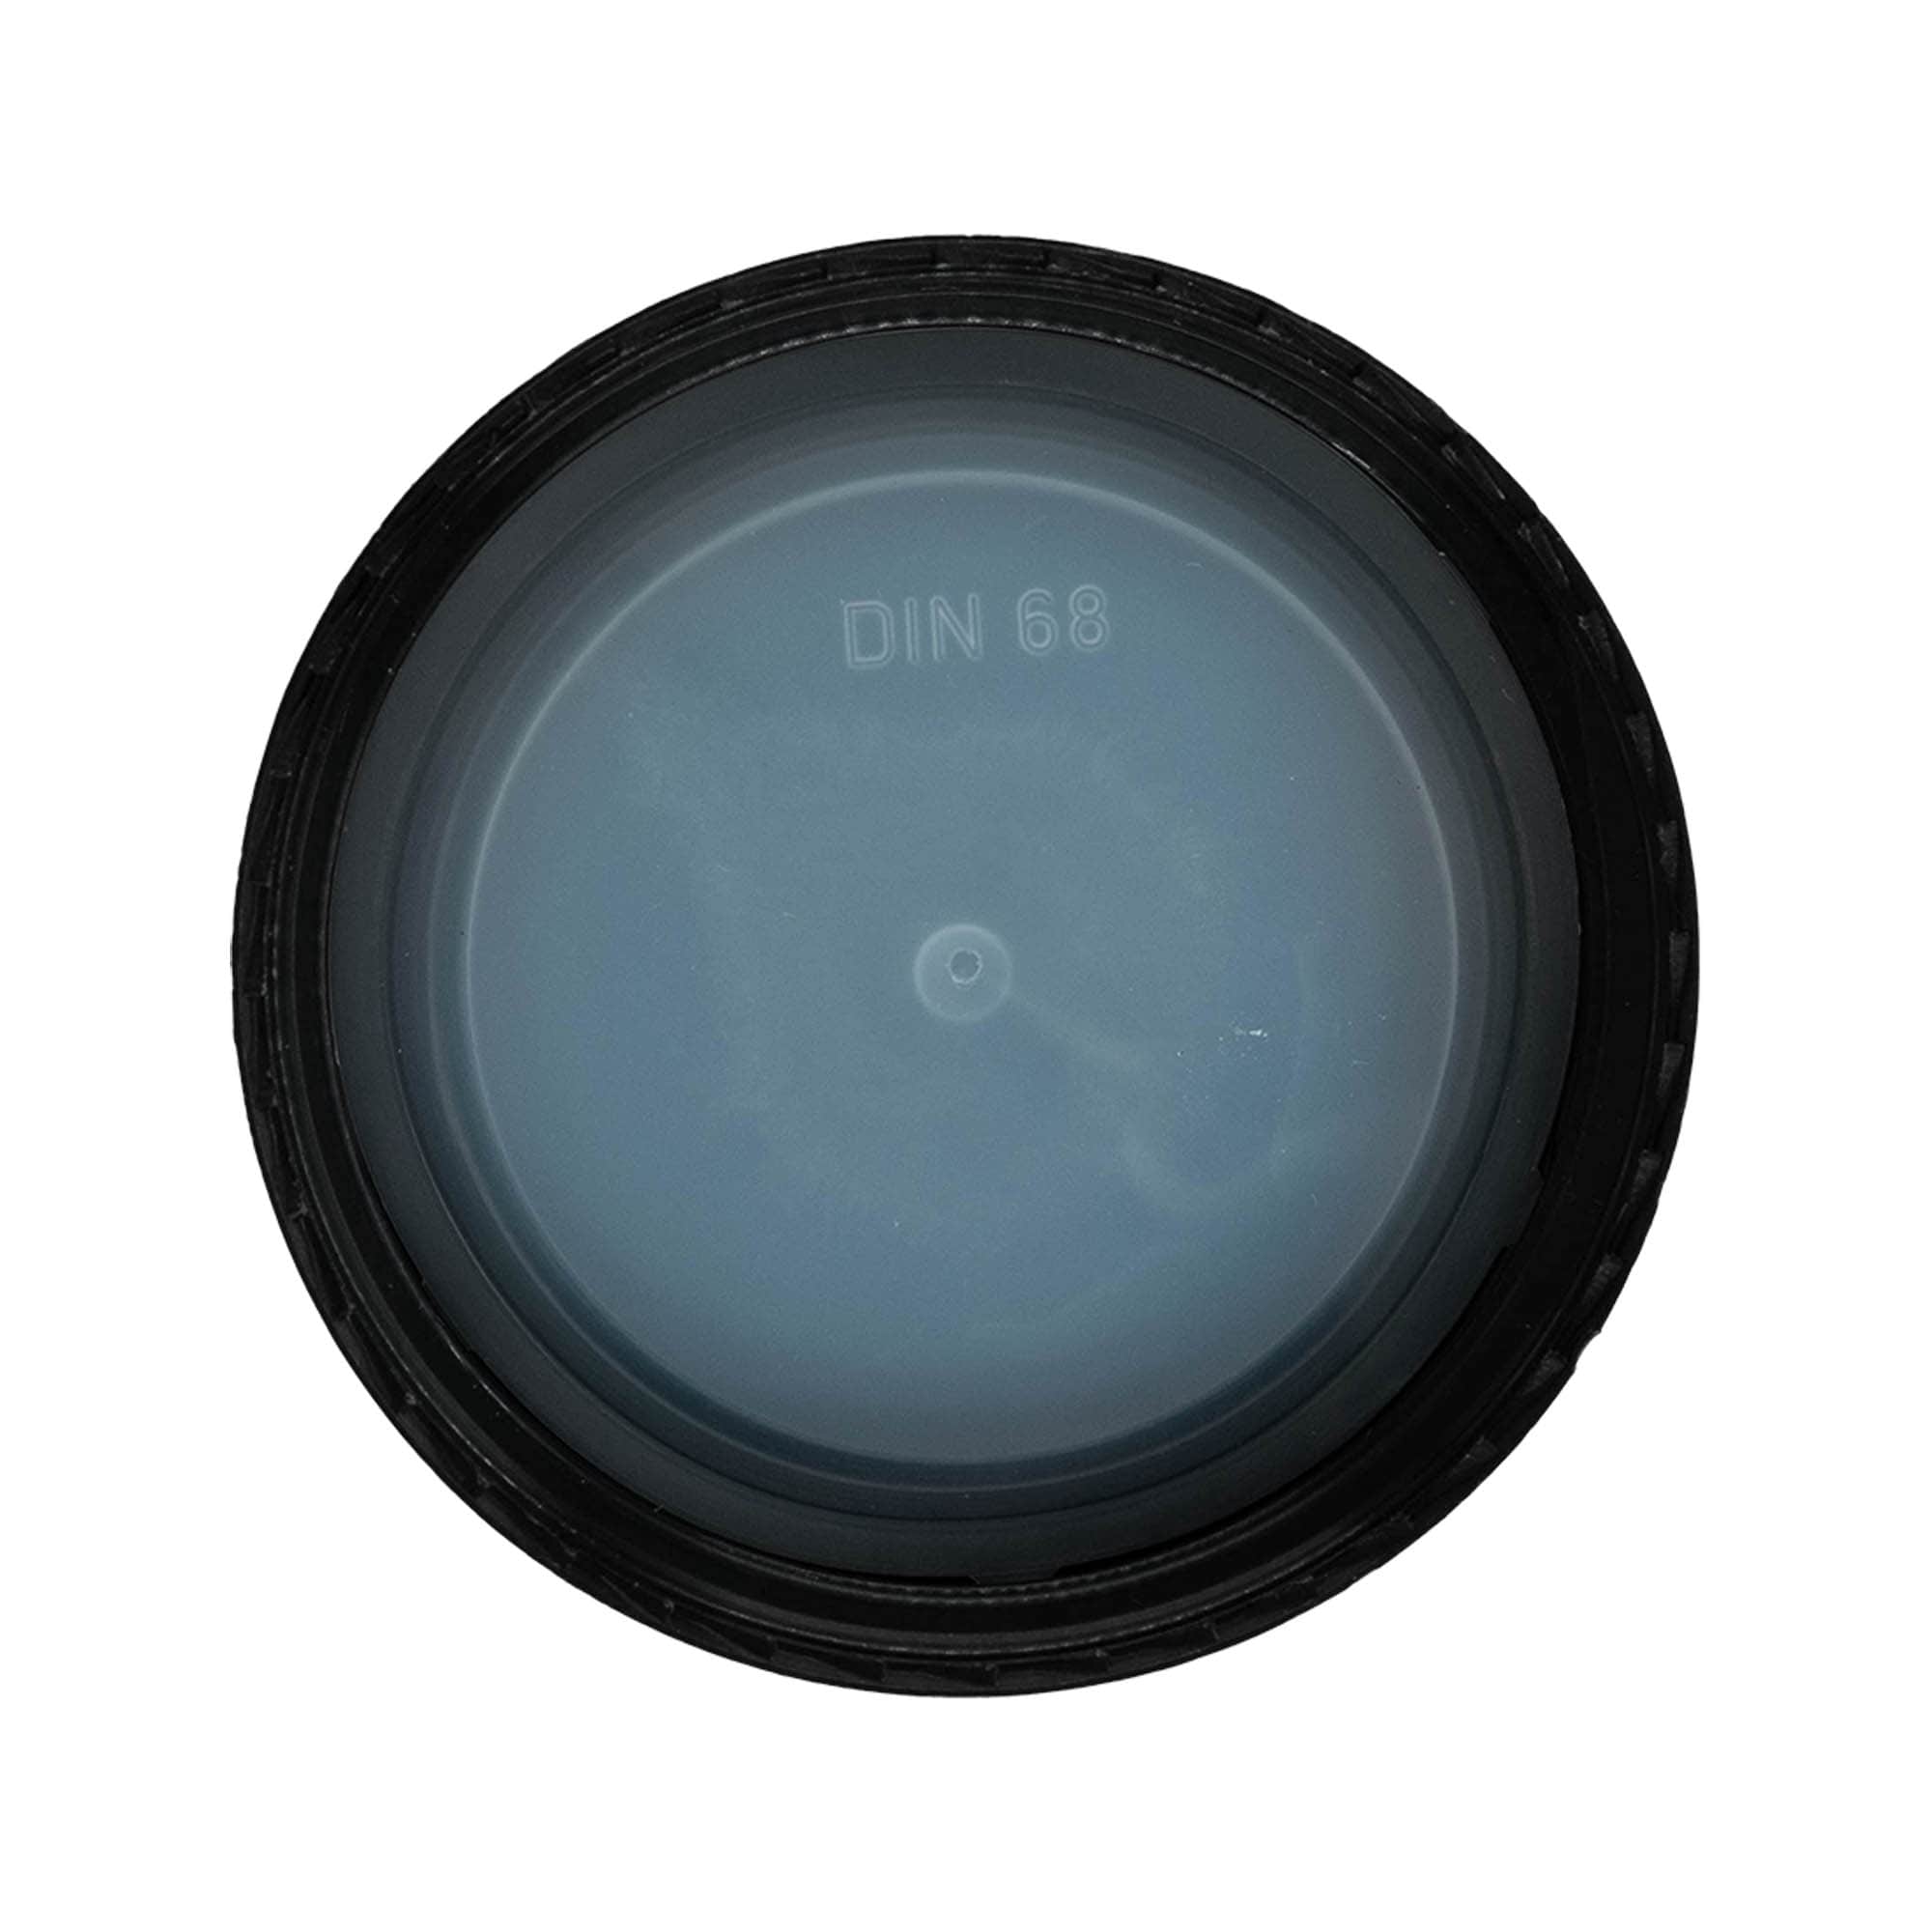 Schraubverschluss, PP-Kunststoff, schwarz, für Mündung: DIN 68